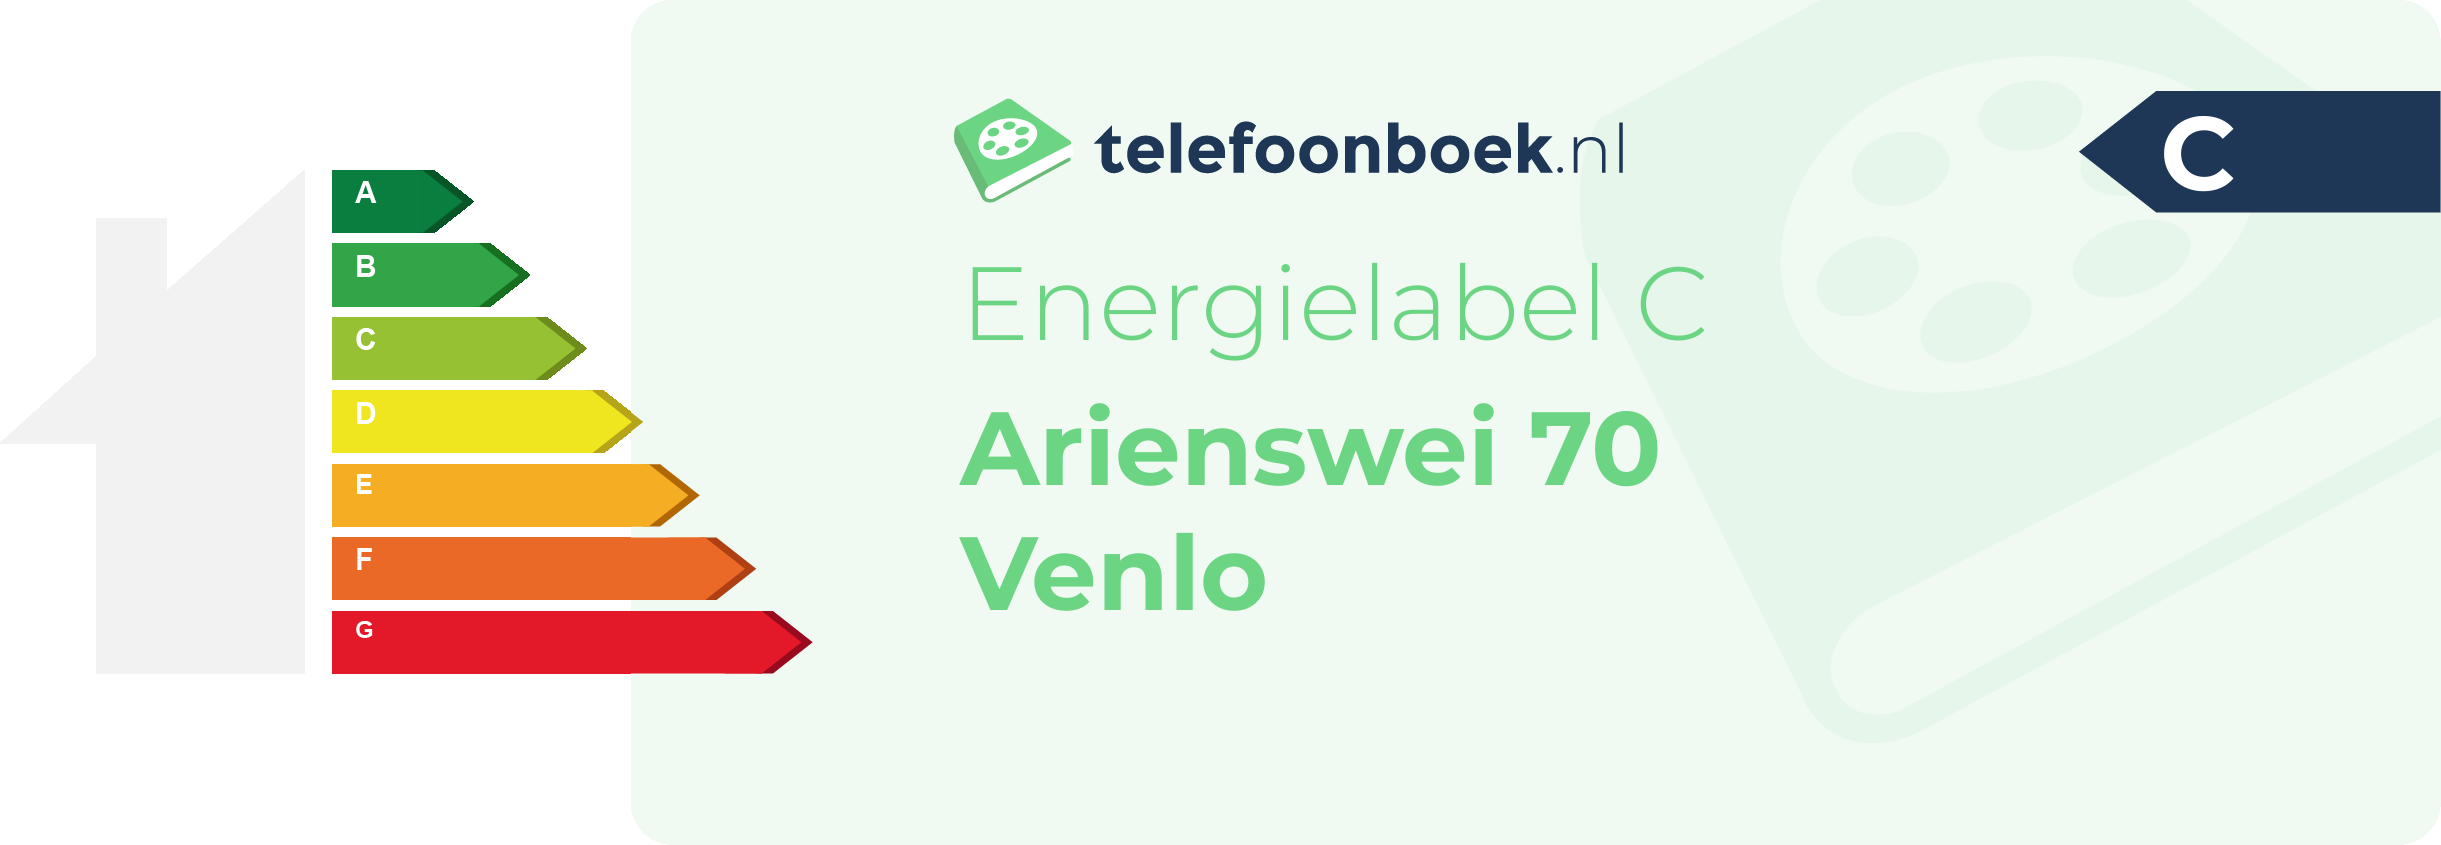 Energielabel Arienswei 70 Venlo